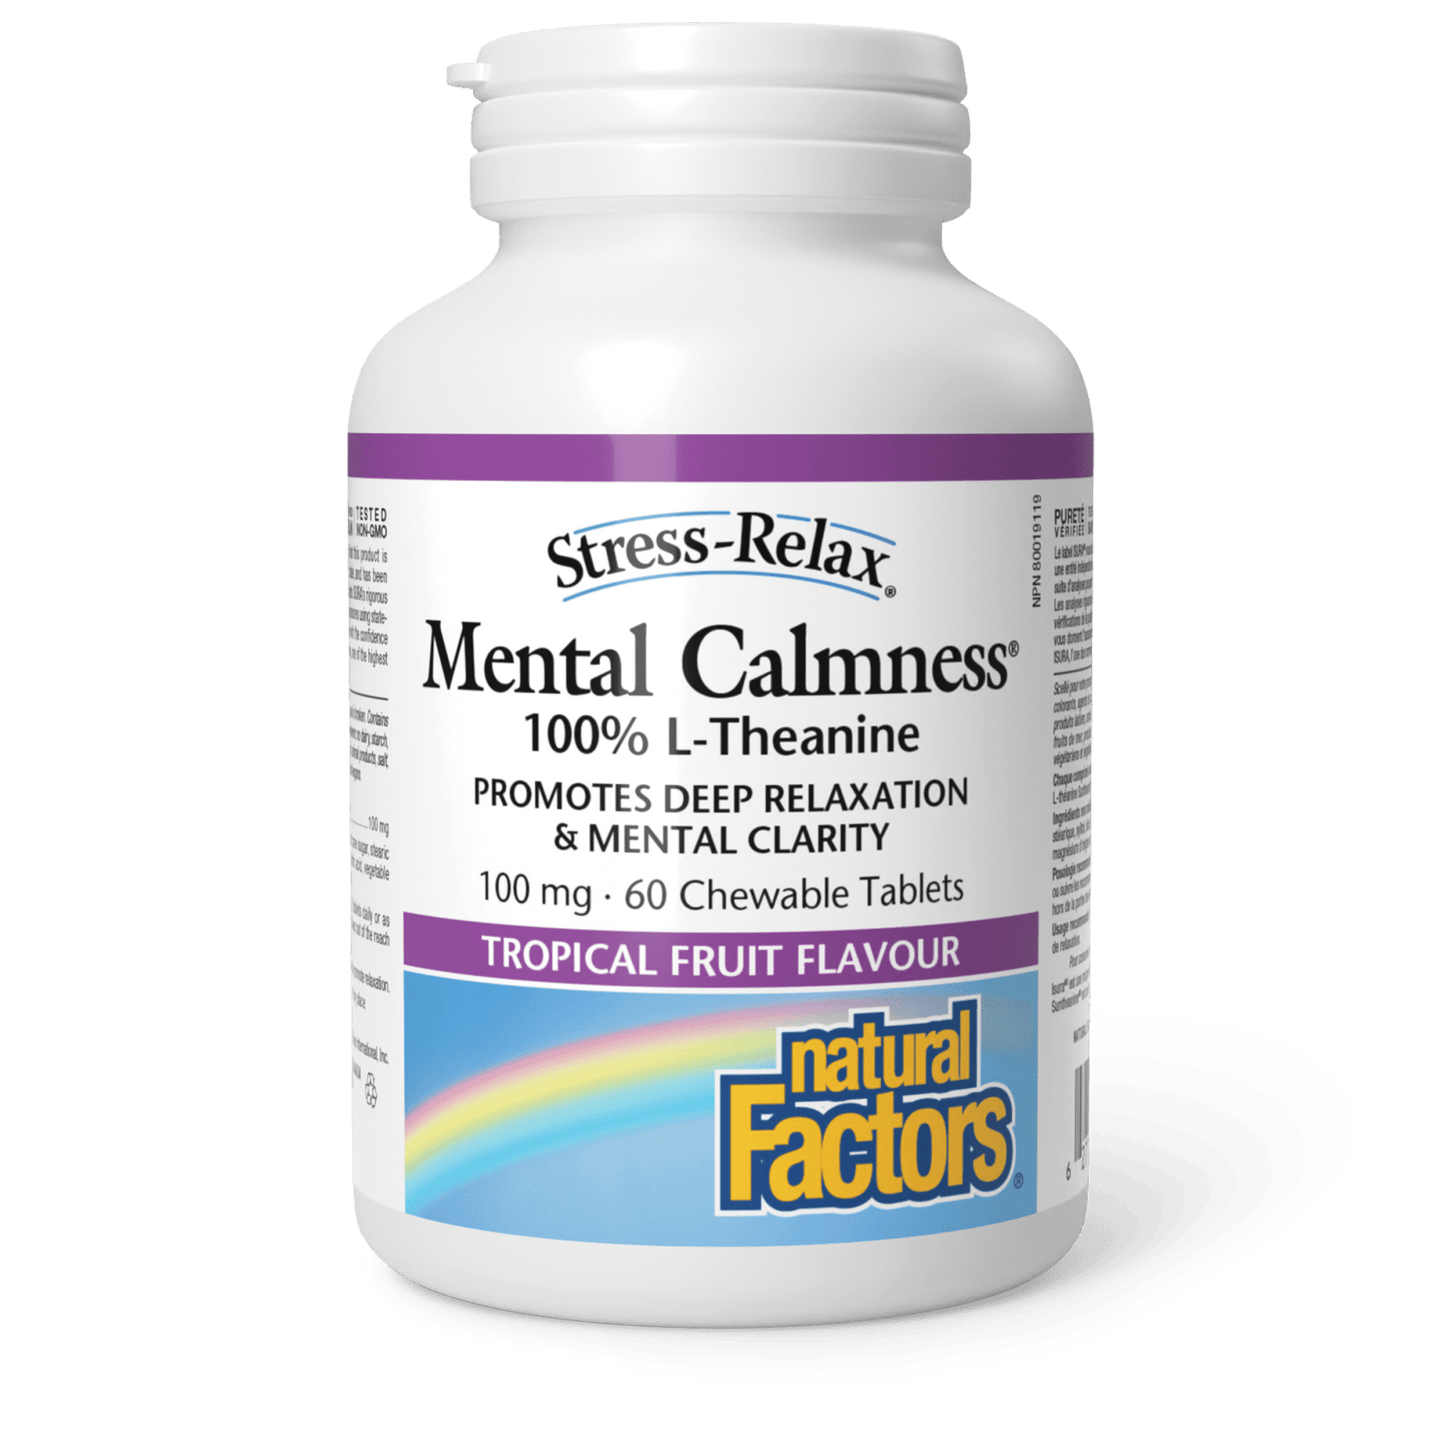 Mental Calmness 100 mg, Stress-Relax, Natural Factors|v|image|2832